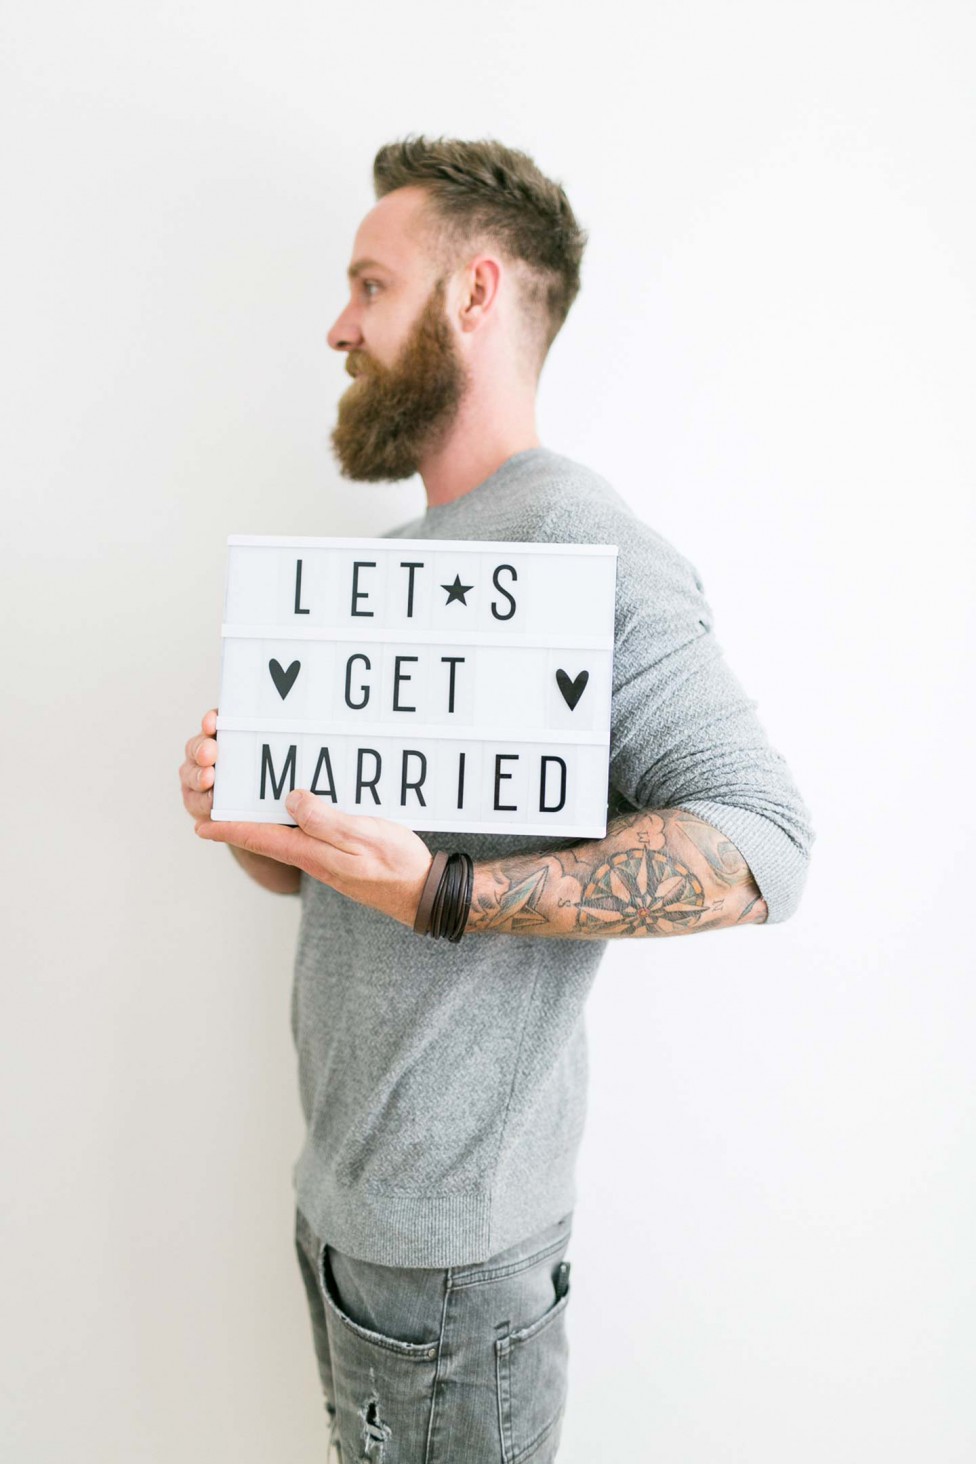 Verliebt, verlobt … verplant! Hochzeitsvorbereitungen zu Zweit